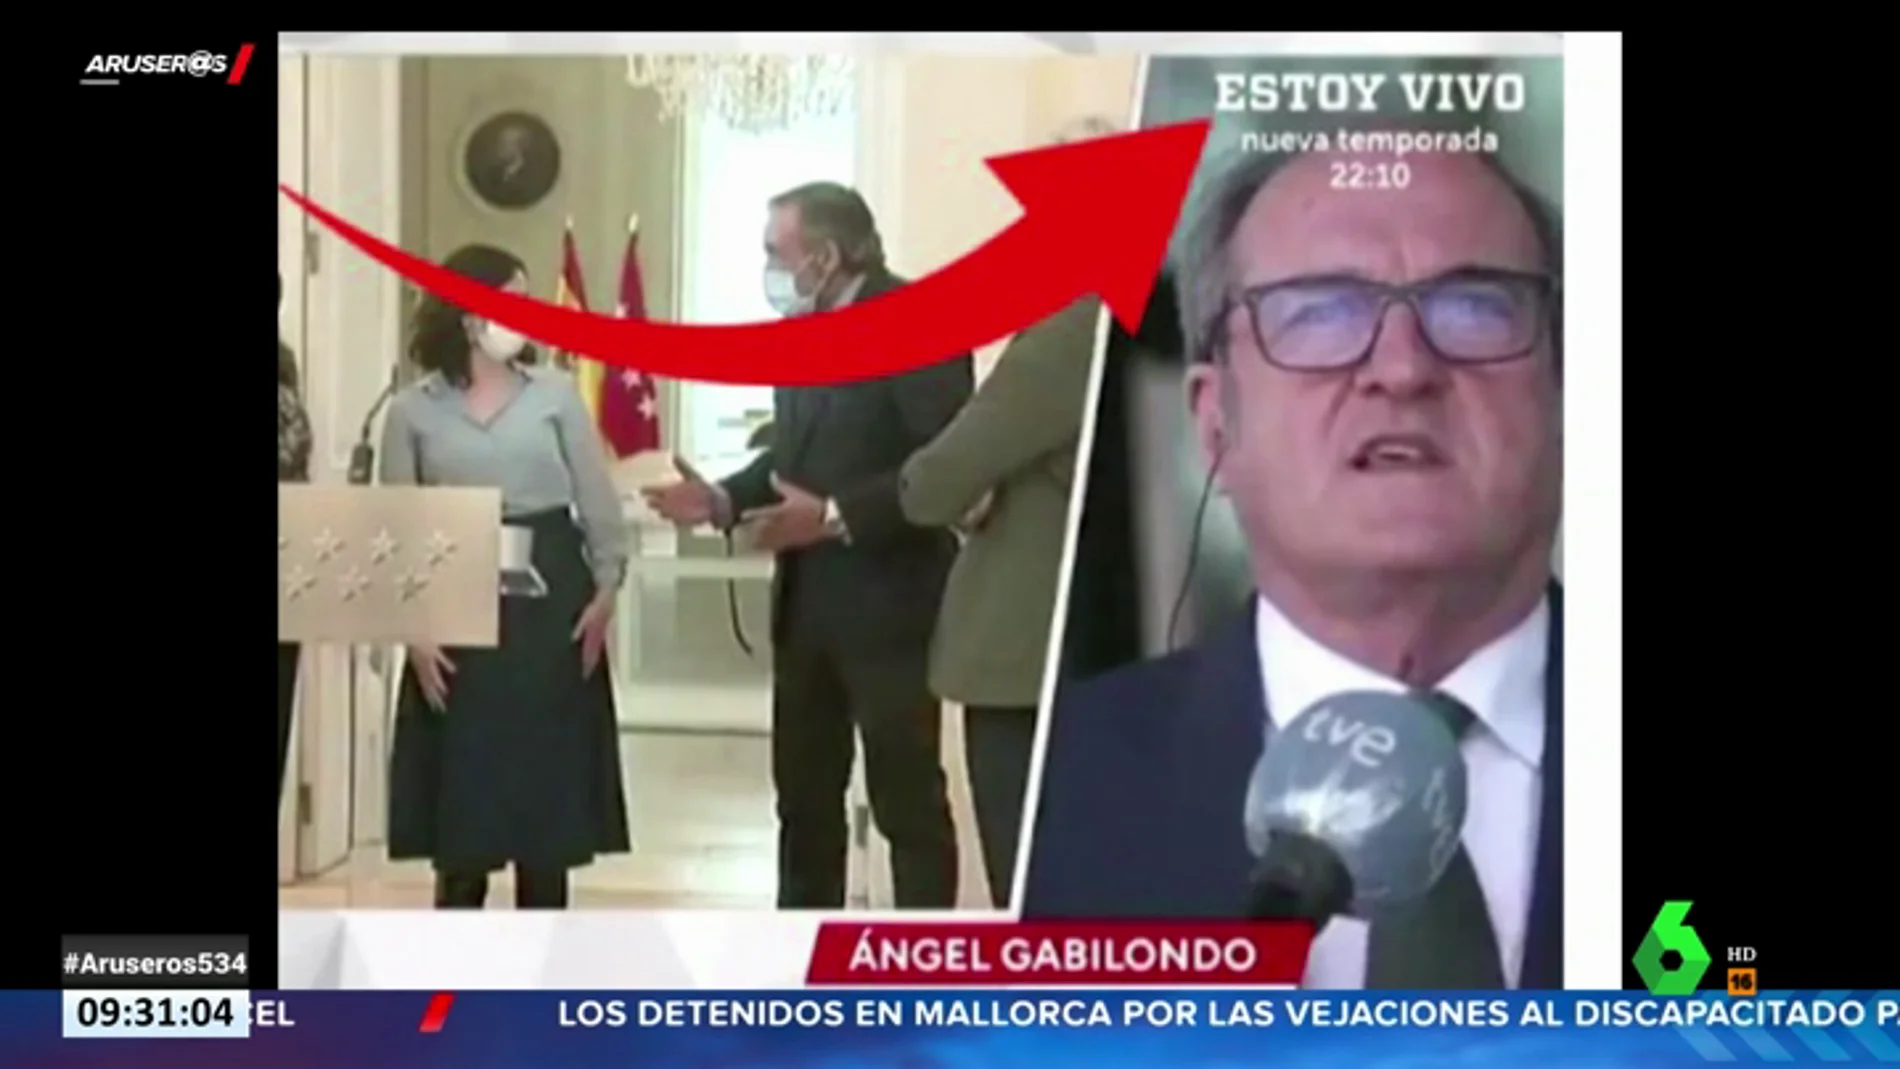 El rótulo de RTVE durante una entrevista a Ángel Gabilondo que arrasa en redes sociales